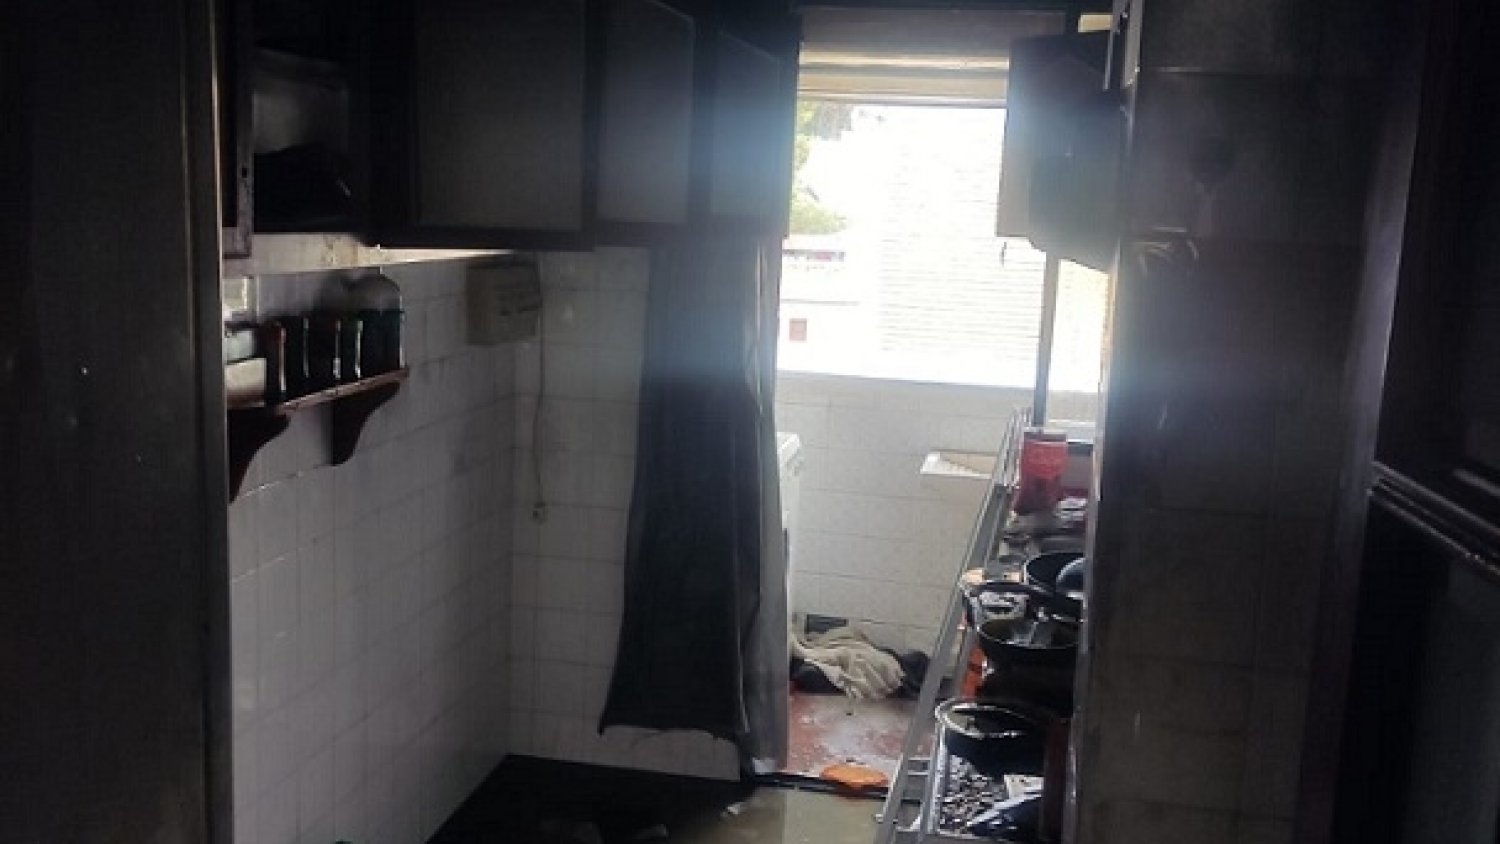 Rescatadas dos personas de un incendio en una vivienda en Antequera